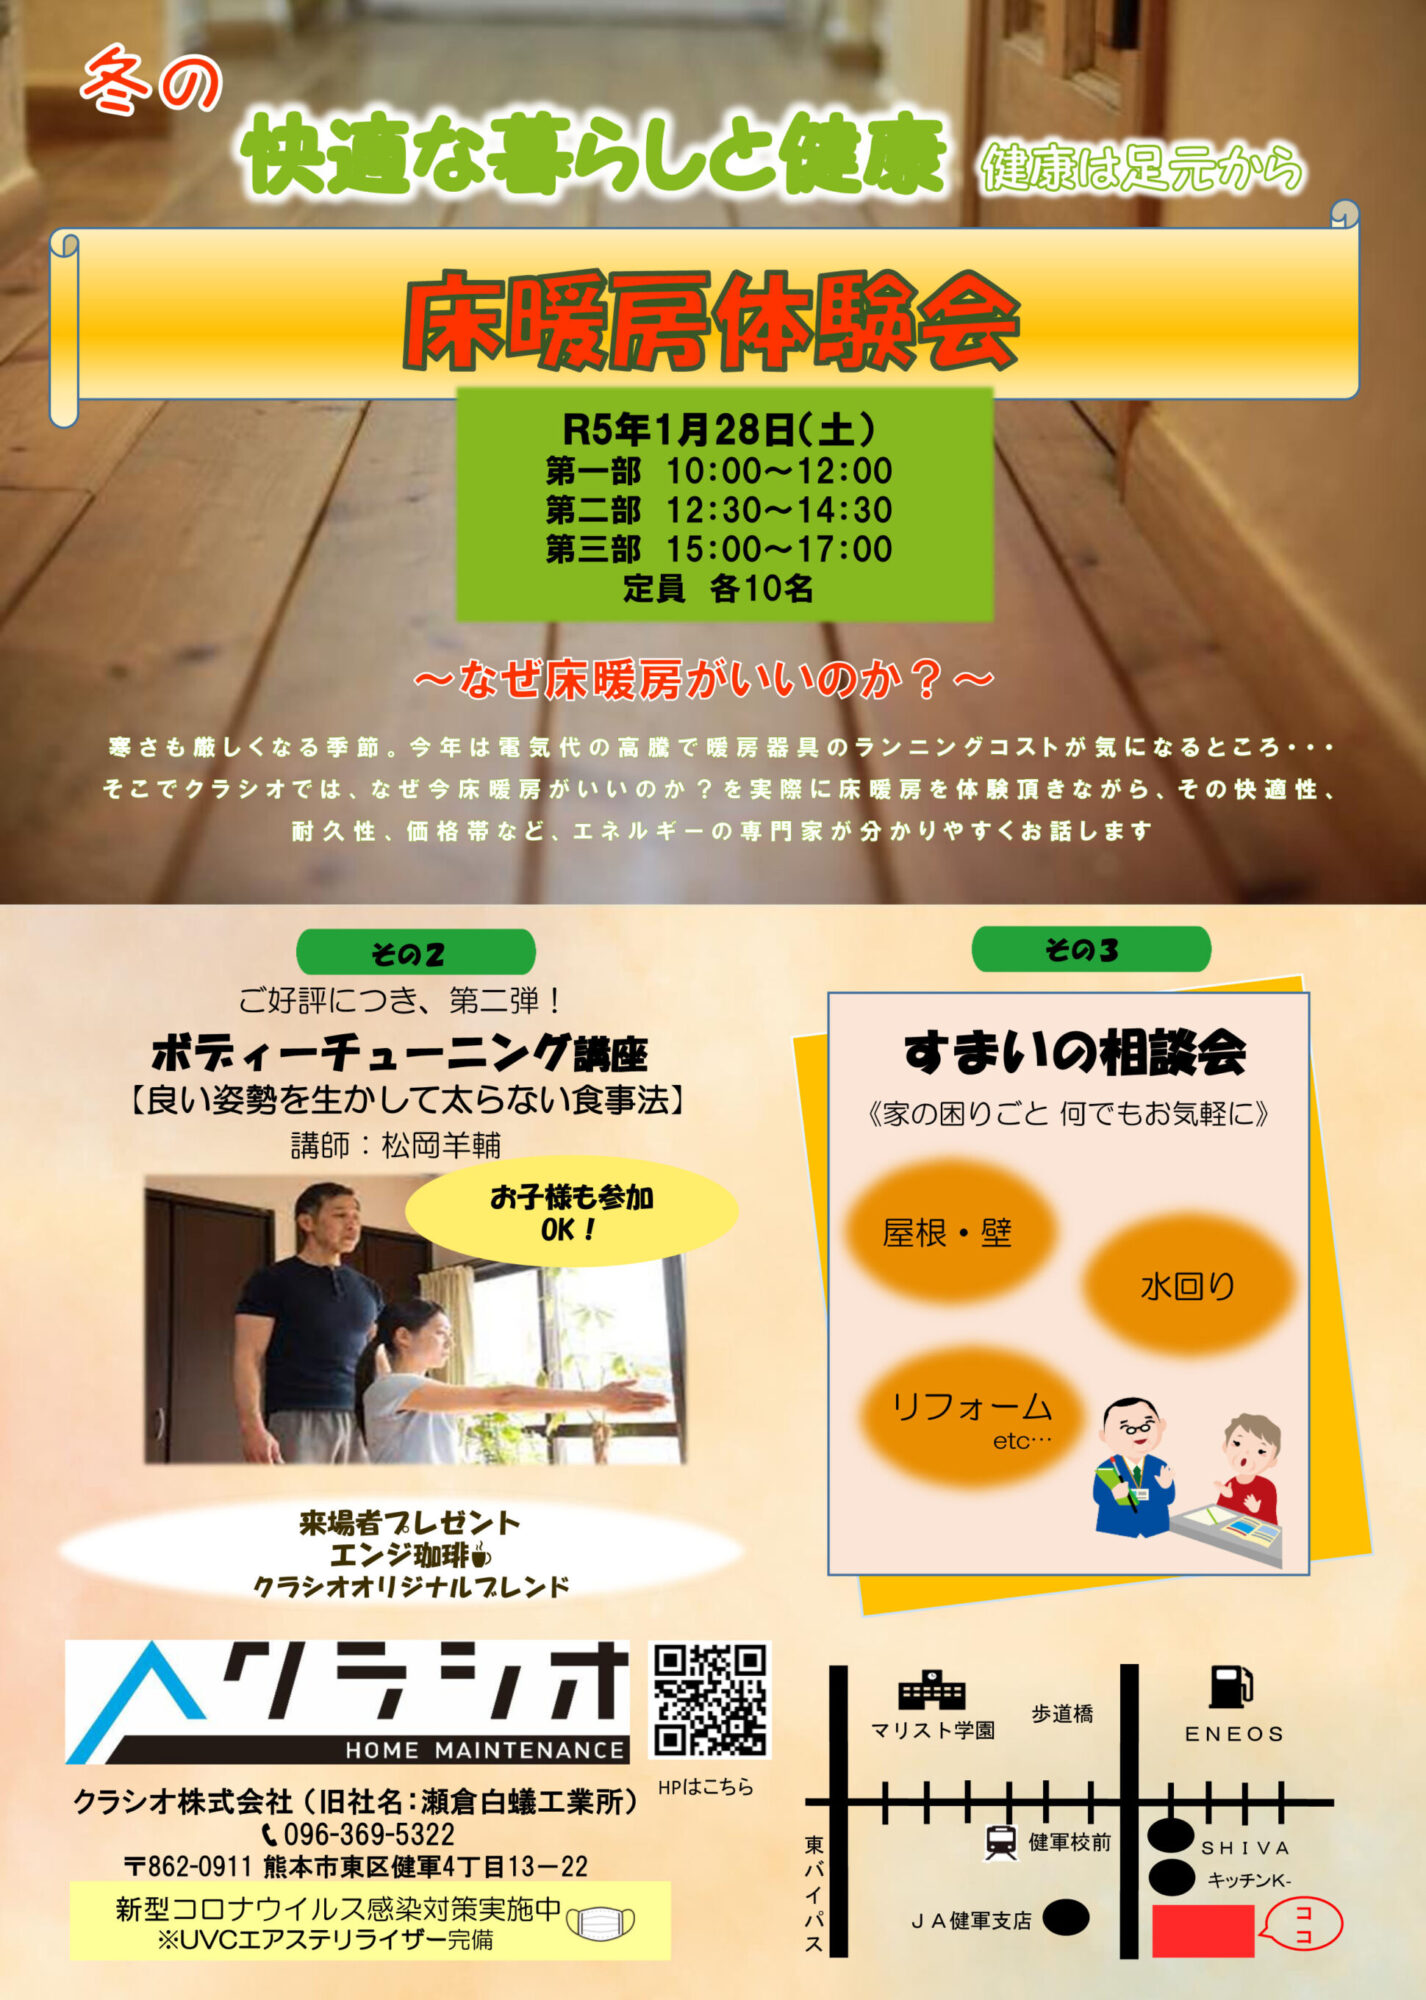 熊本市のクラシオ様が『床暖房体験会』を開催されます